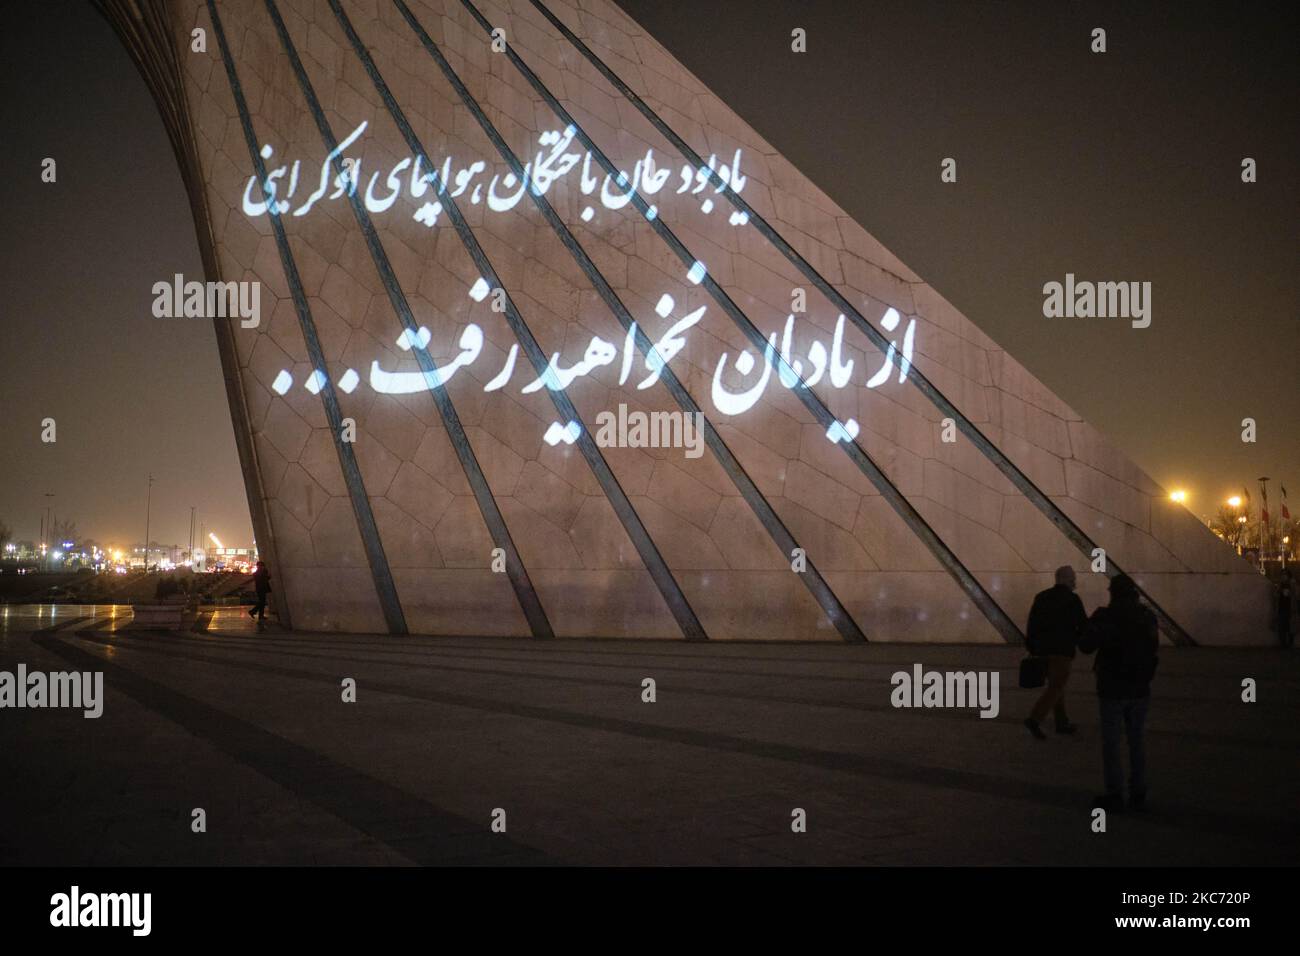 Ein persisches Drehbuch, das besagte, das Denkmal für die Opfer des ukrainischen Flugzeugs, das Sie nicht vergessen werden, ist auf dem Azadi-Denkmal im Westen Teherans abgebildet, während einer Videomarografie zum Gedenken an Menschen, die beim Abschuss des ukrainischen Flugzeugs am 6. Januar 2021 getötet wurden. Der ukrainische Flug 752 war ein planmäßiger internationaler Passagierflug von Teheran nach Kiew am 8.. Januar 2020, der kurz nach dem Start vom Internationalen Flughafen Teheran Imam Khomeini durch das Korps der Islamischen Revolutionsgarden (IRGC) abgeschossen wurde und alle 176 Passagiere und Besatzung getötet wurden, während der Iran vollständig bereit war Stockfoto